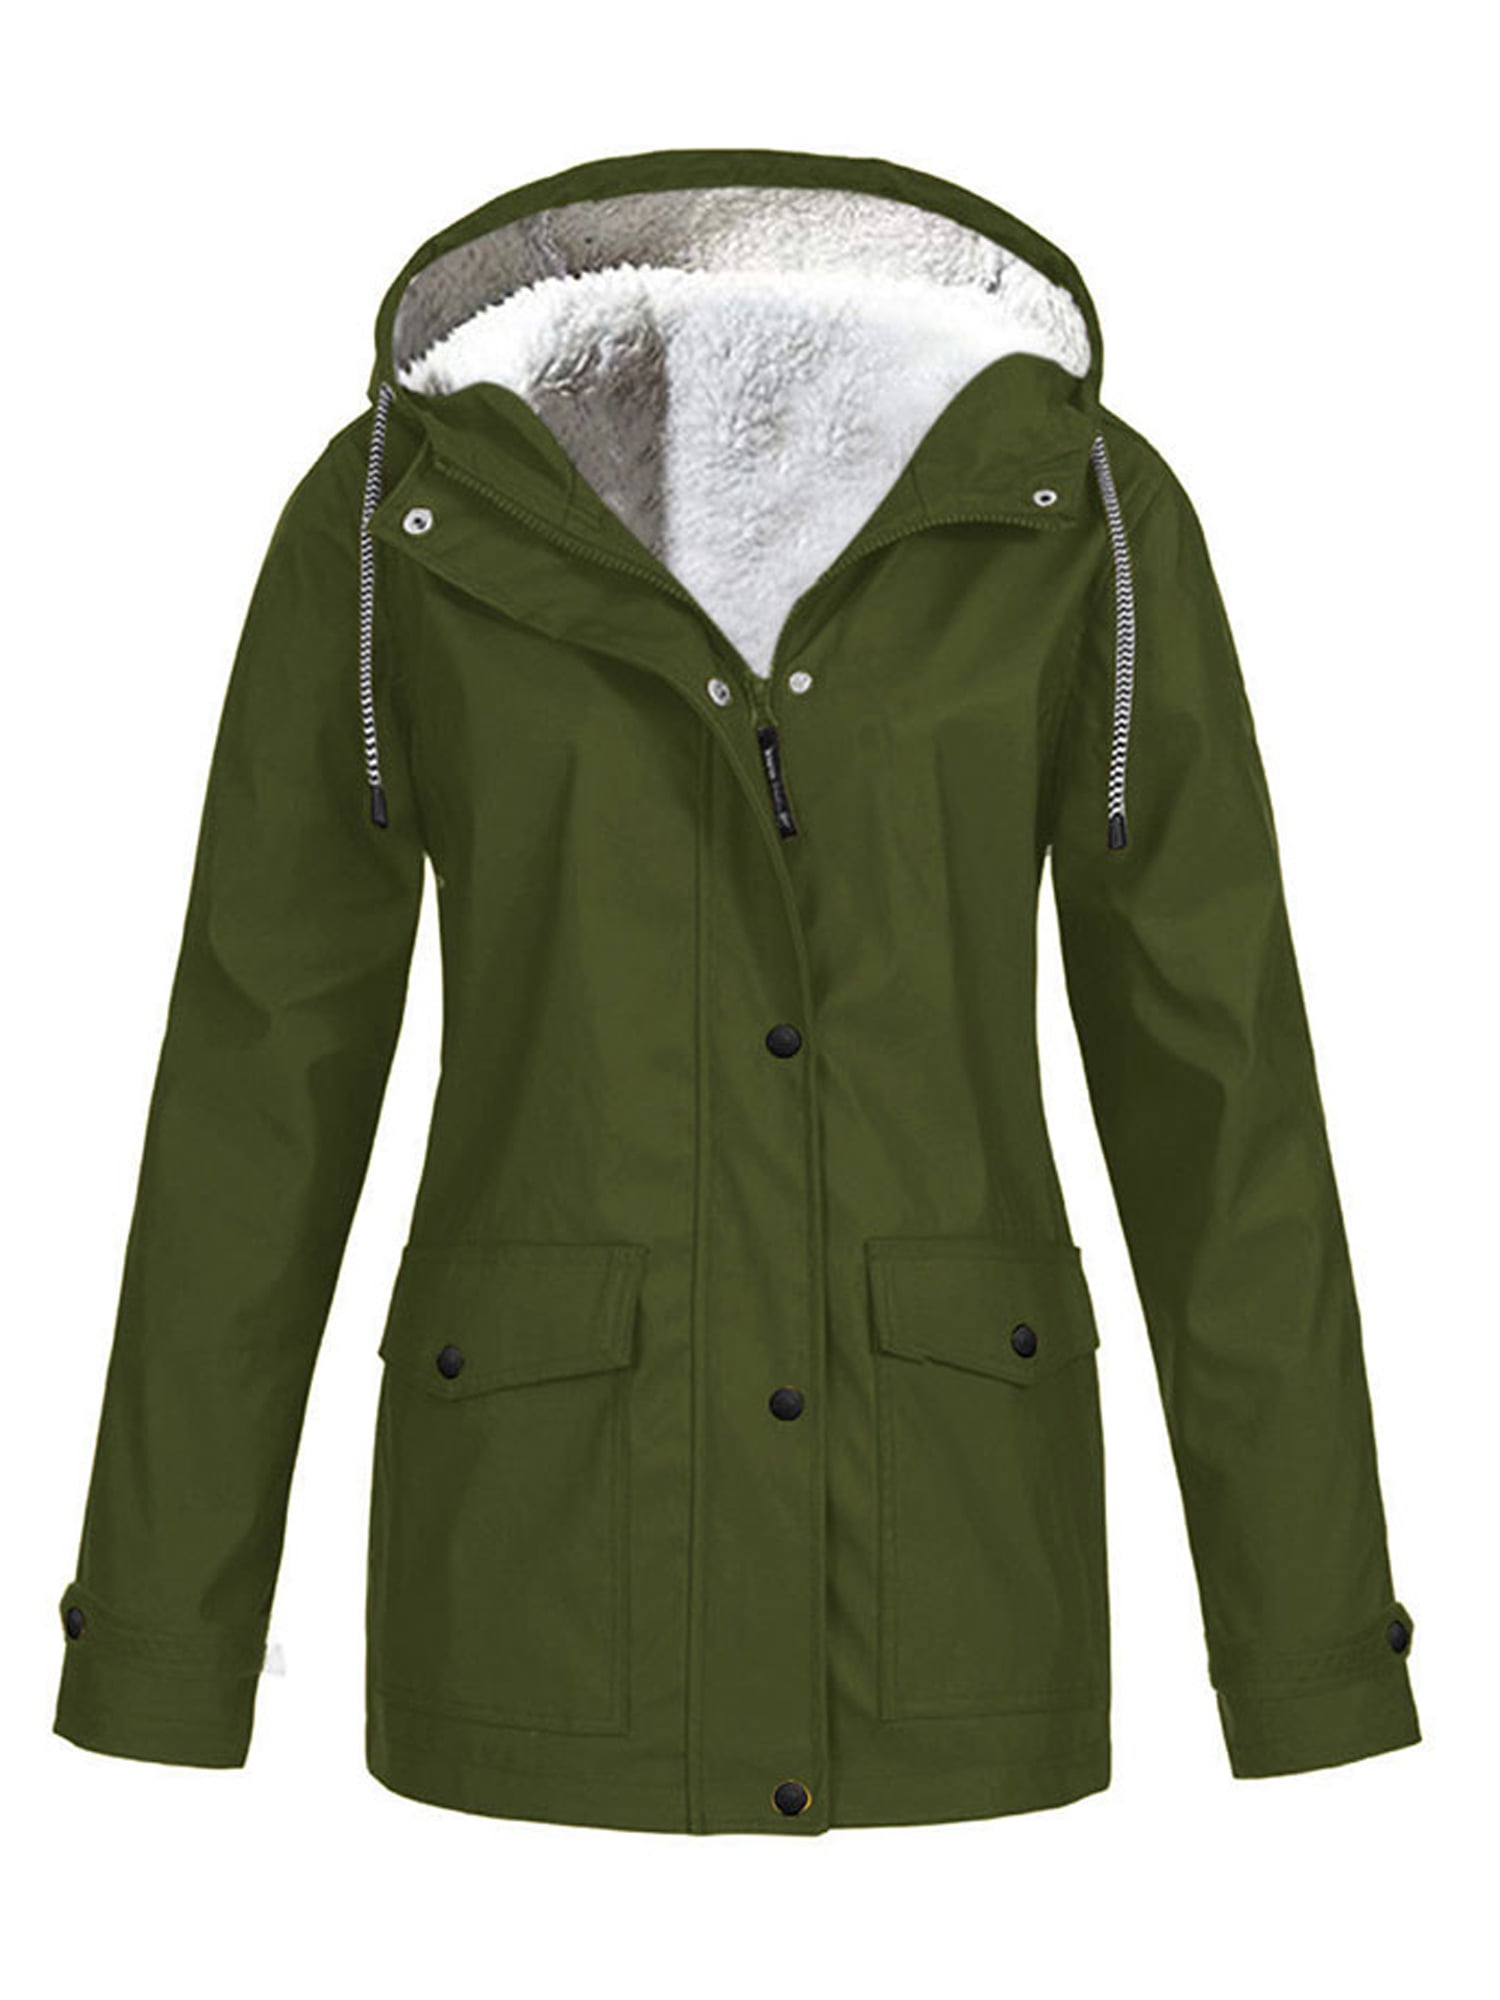 Women's Waterproof Jacket Raincoat Fleece Lined Warm Winter Coat Plus Size